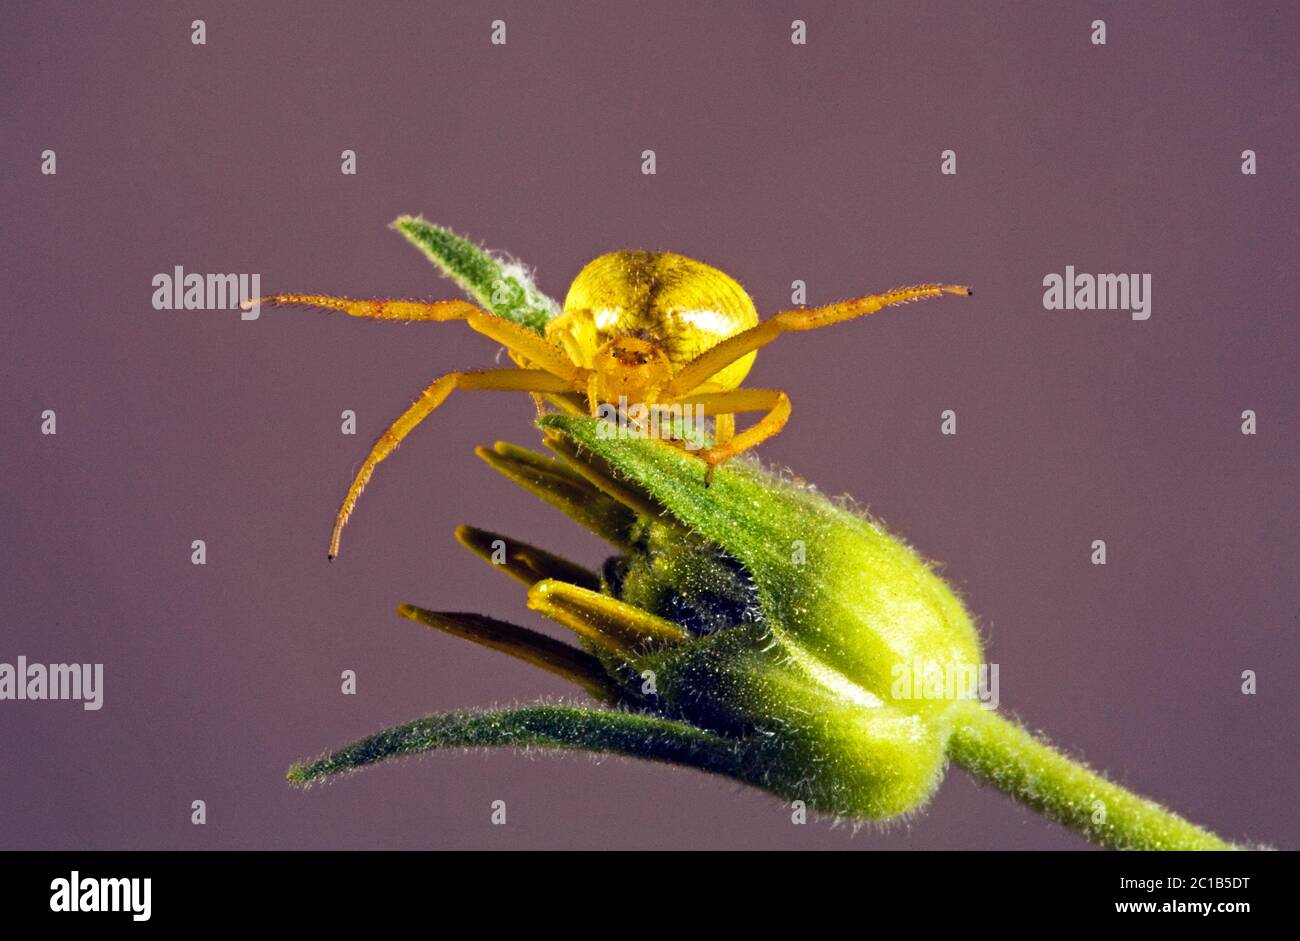 Détail d'une araignée de crabe doré, Misumena vatia, sur une fleur sauvage de balsamroot. Ils peuvent changer leur couleur de blanc à jaune pour se fondre en wi Banque D'Images